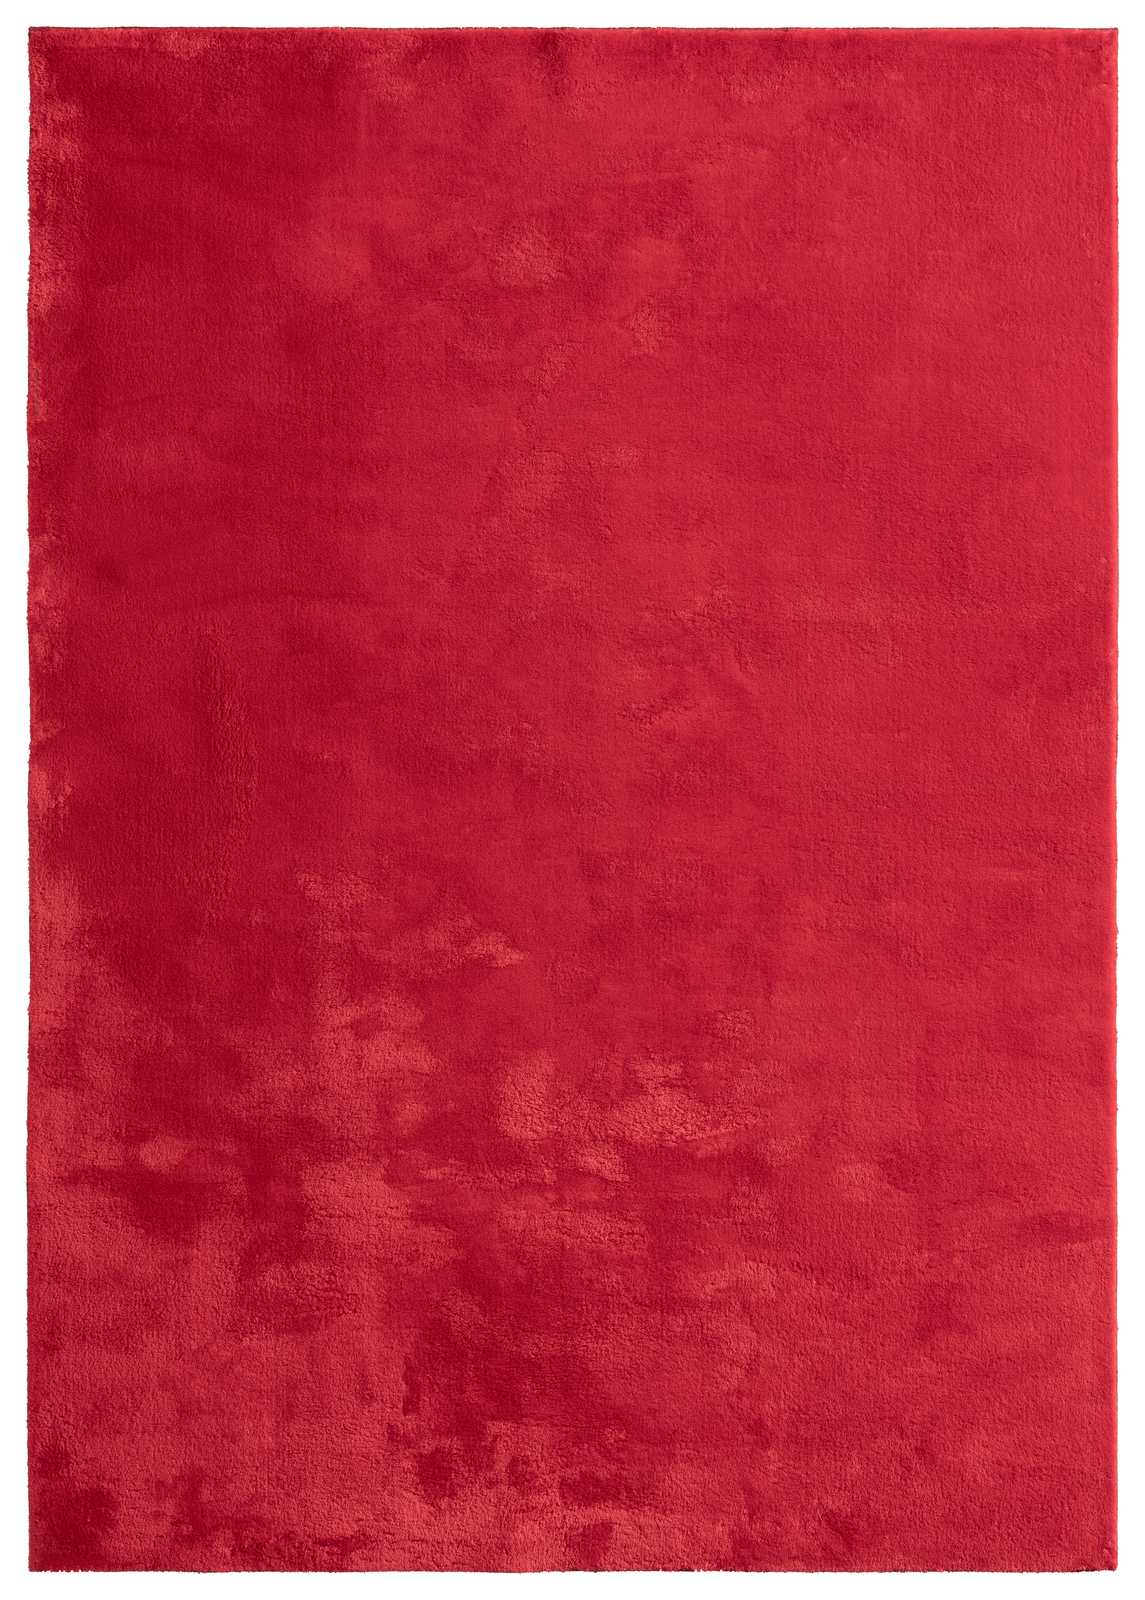             Tapis à poils longs particulièrement doux en rouge - 170 x 120 cm
        